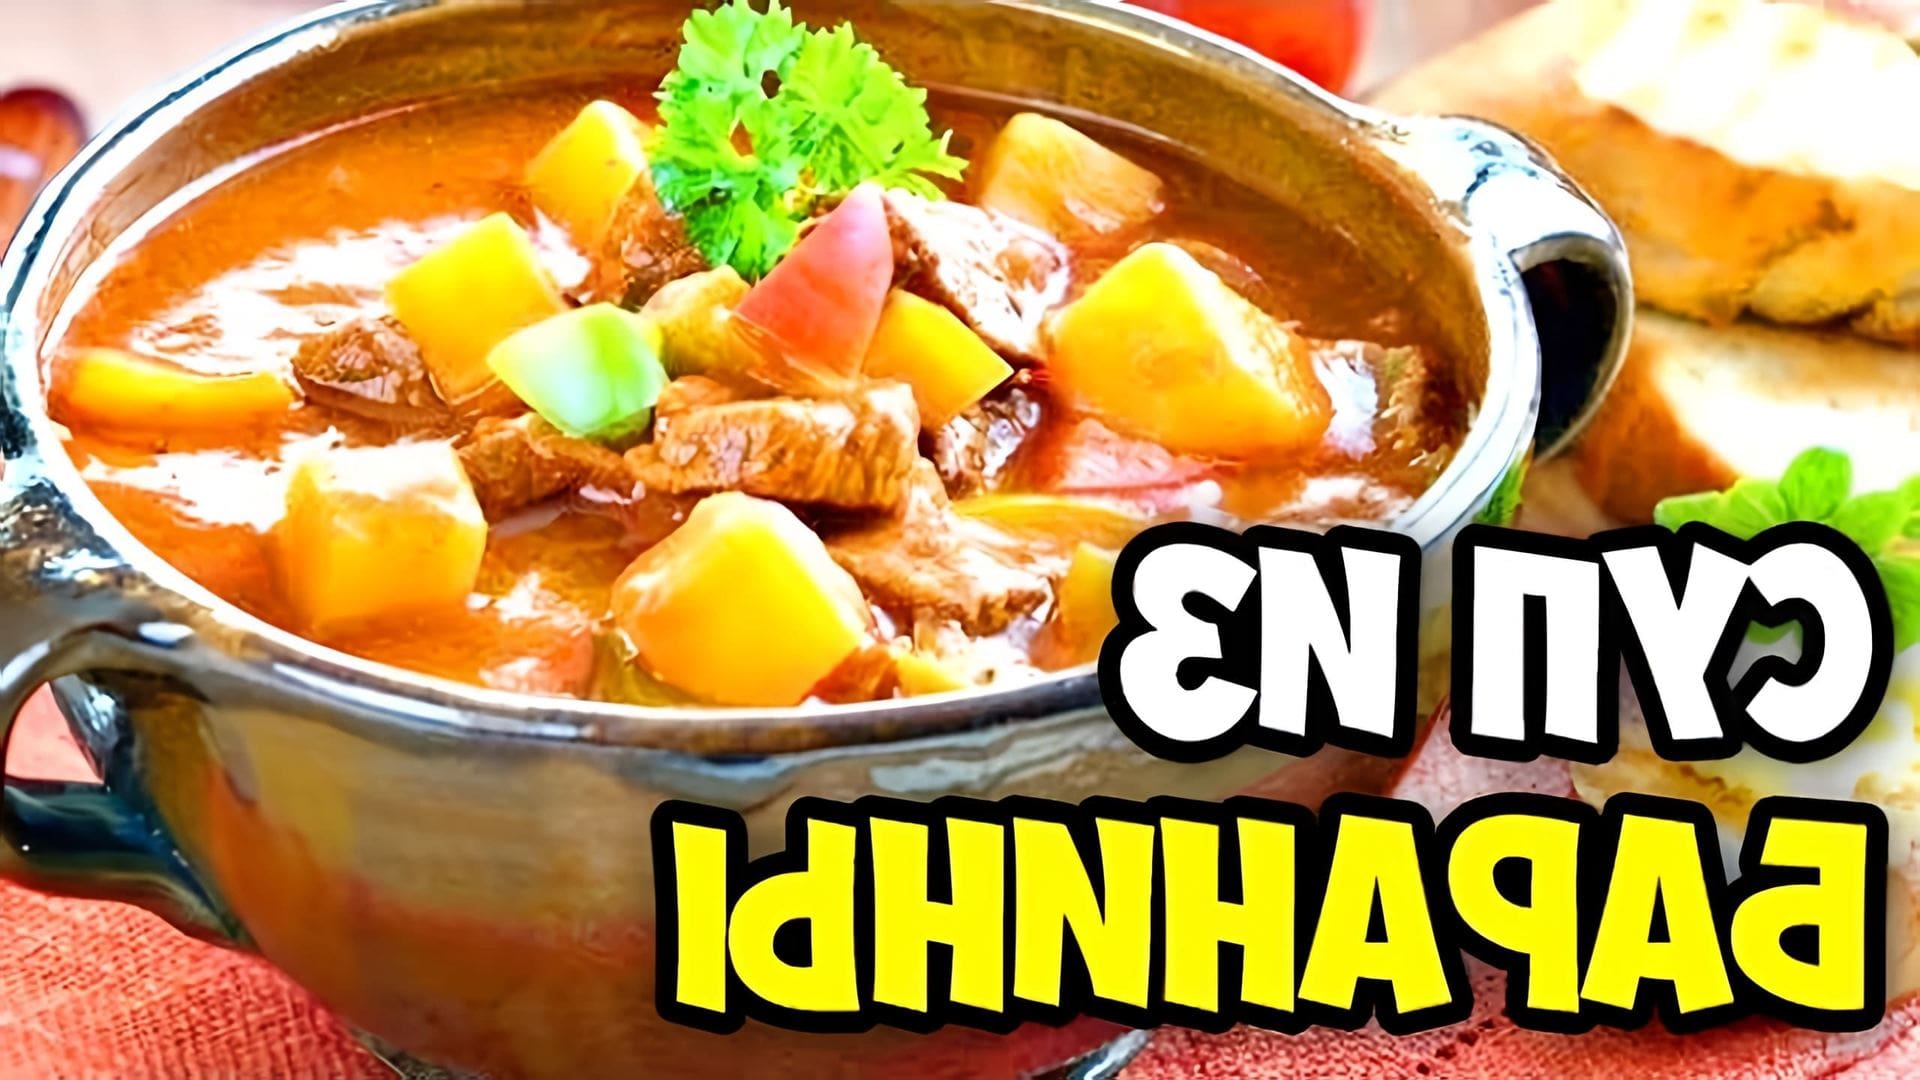 В этом видео демонстрируется процесс приготовления вкусного супа из баранины